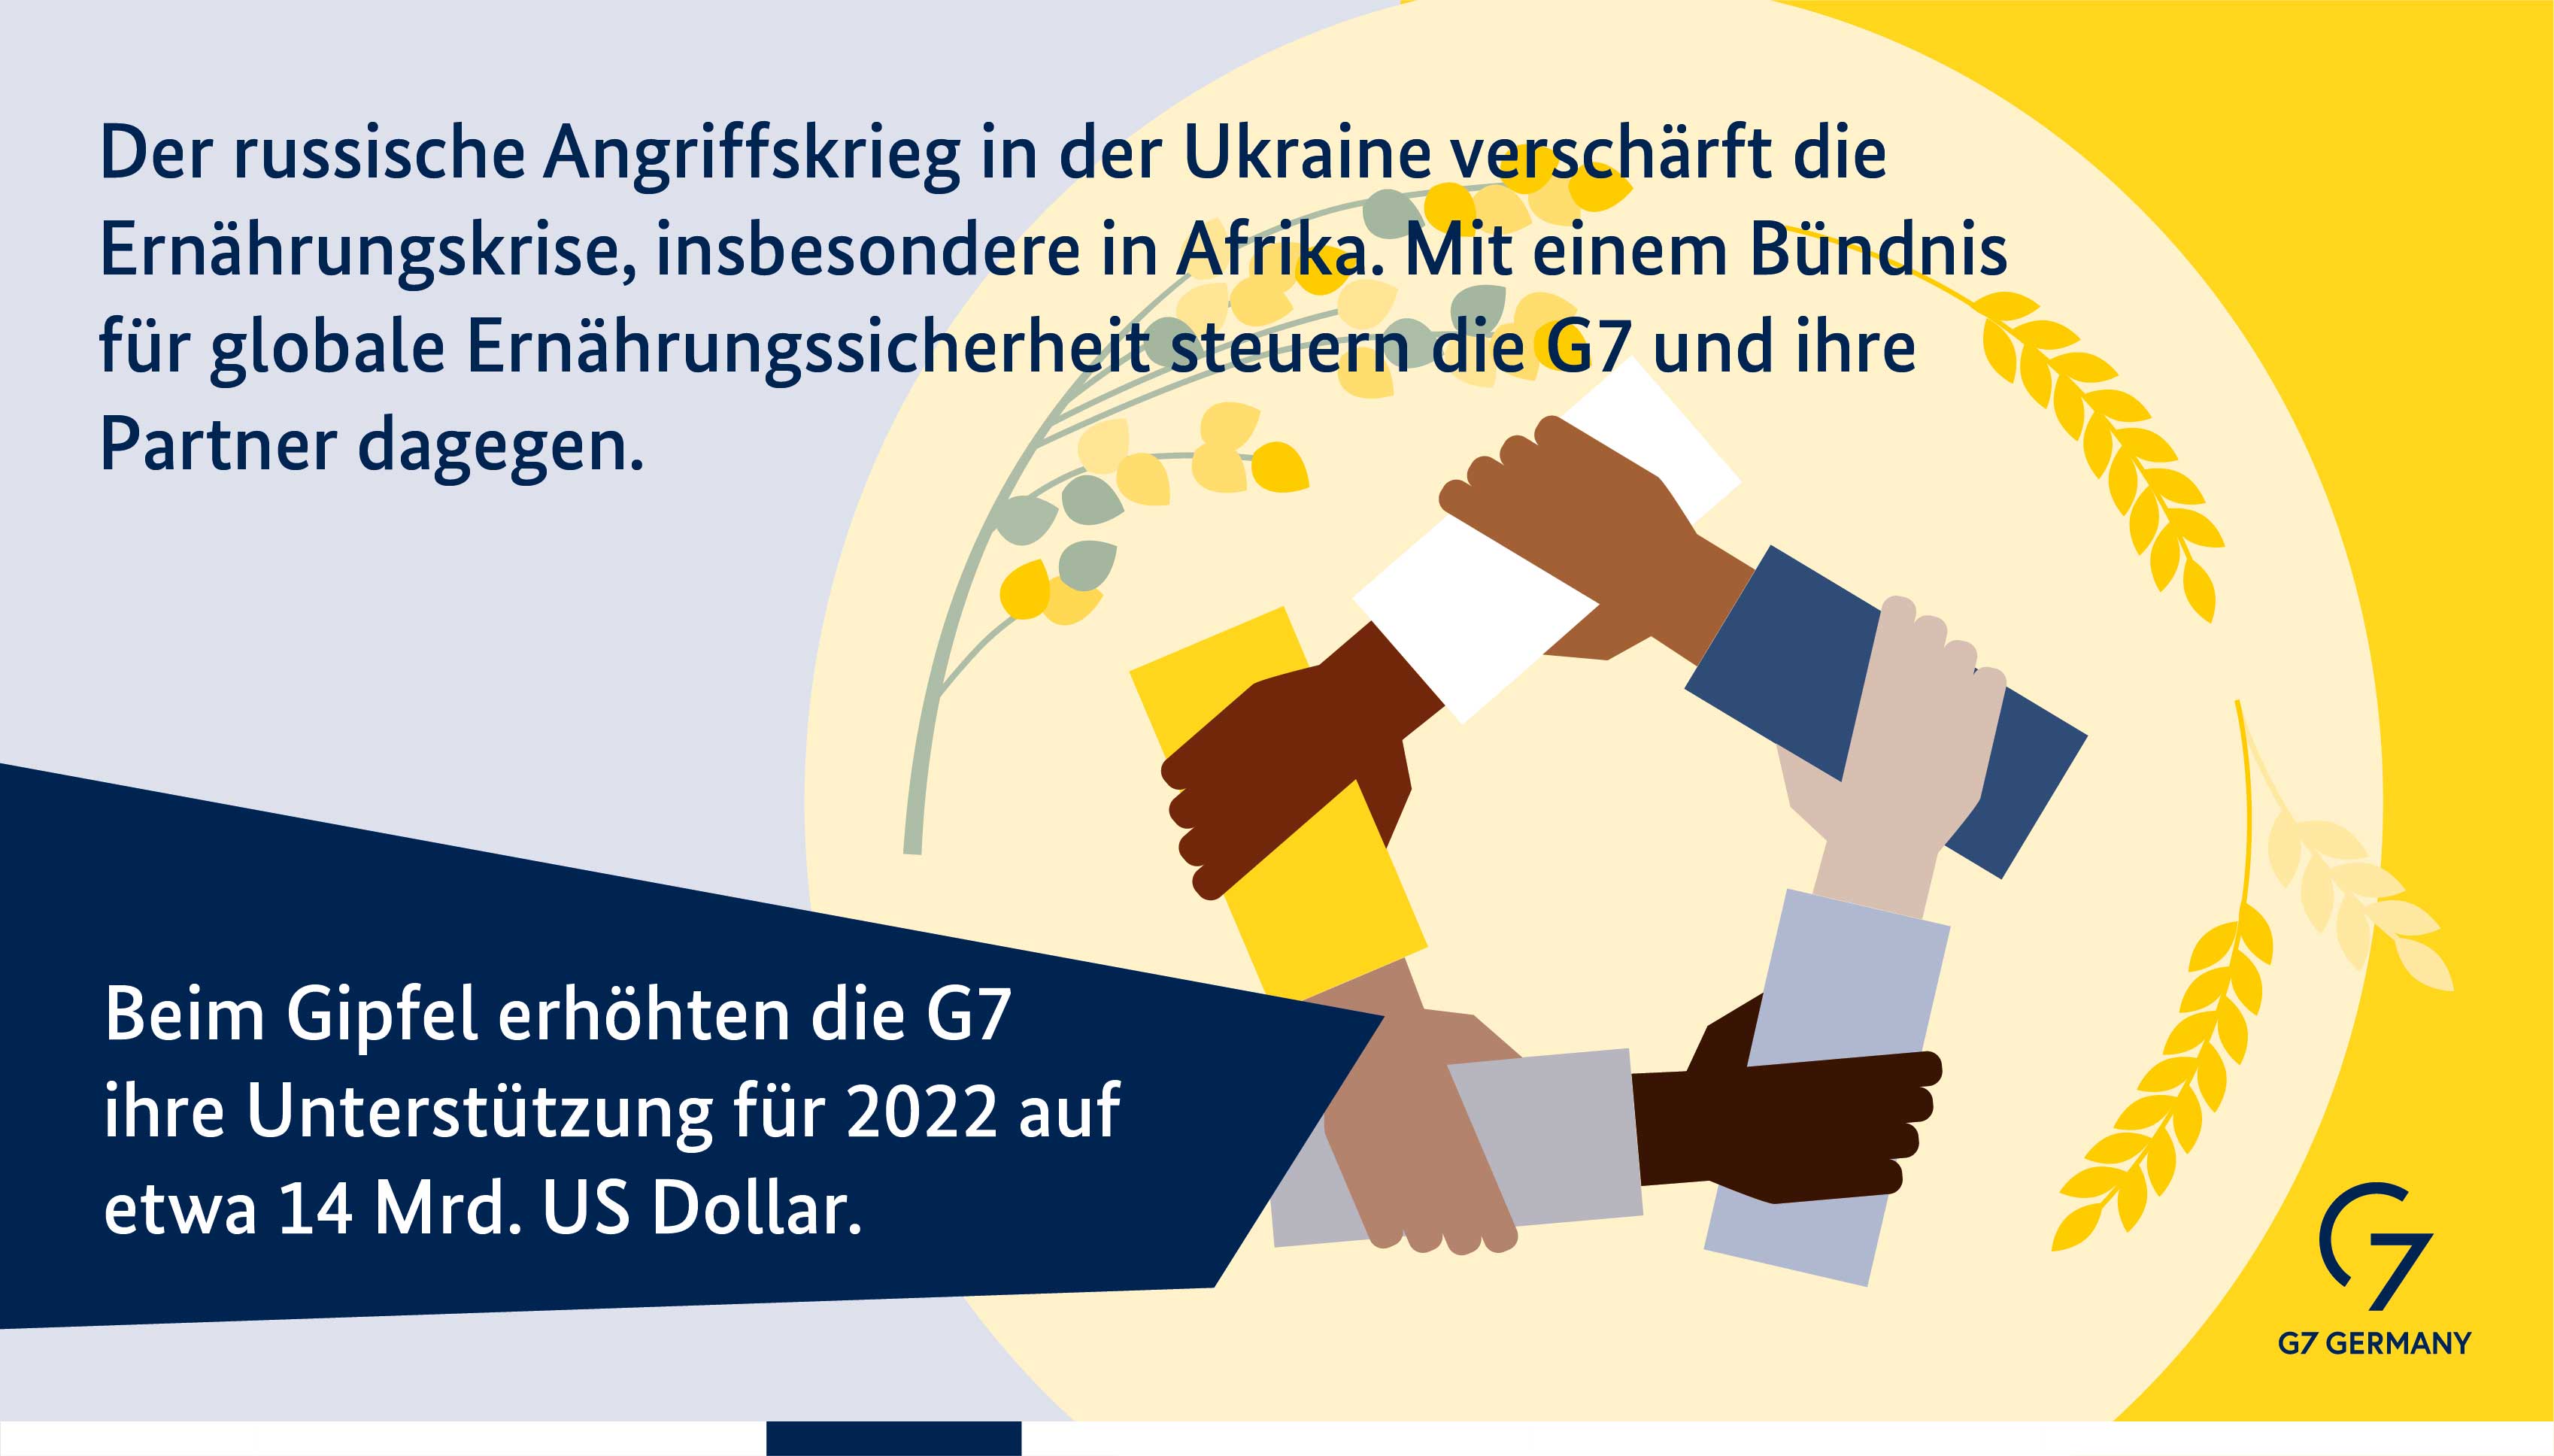 Der russische Angriffskrieg verschärft die globale Ernährungskrise, insbesondere in Afrika. Mit einem Bündnis für globale Ernährungssicherheit steuern die G7 und ihre Partner dagegen. Beim Gipfel stockt die G7 ihre Hilfen im Jahr 2022 auf 14 Milliarden US-Dollar auf.